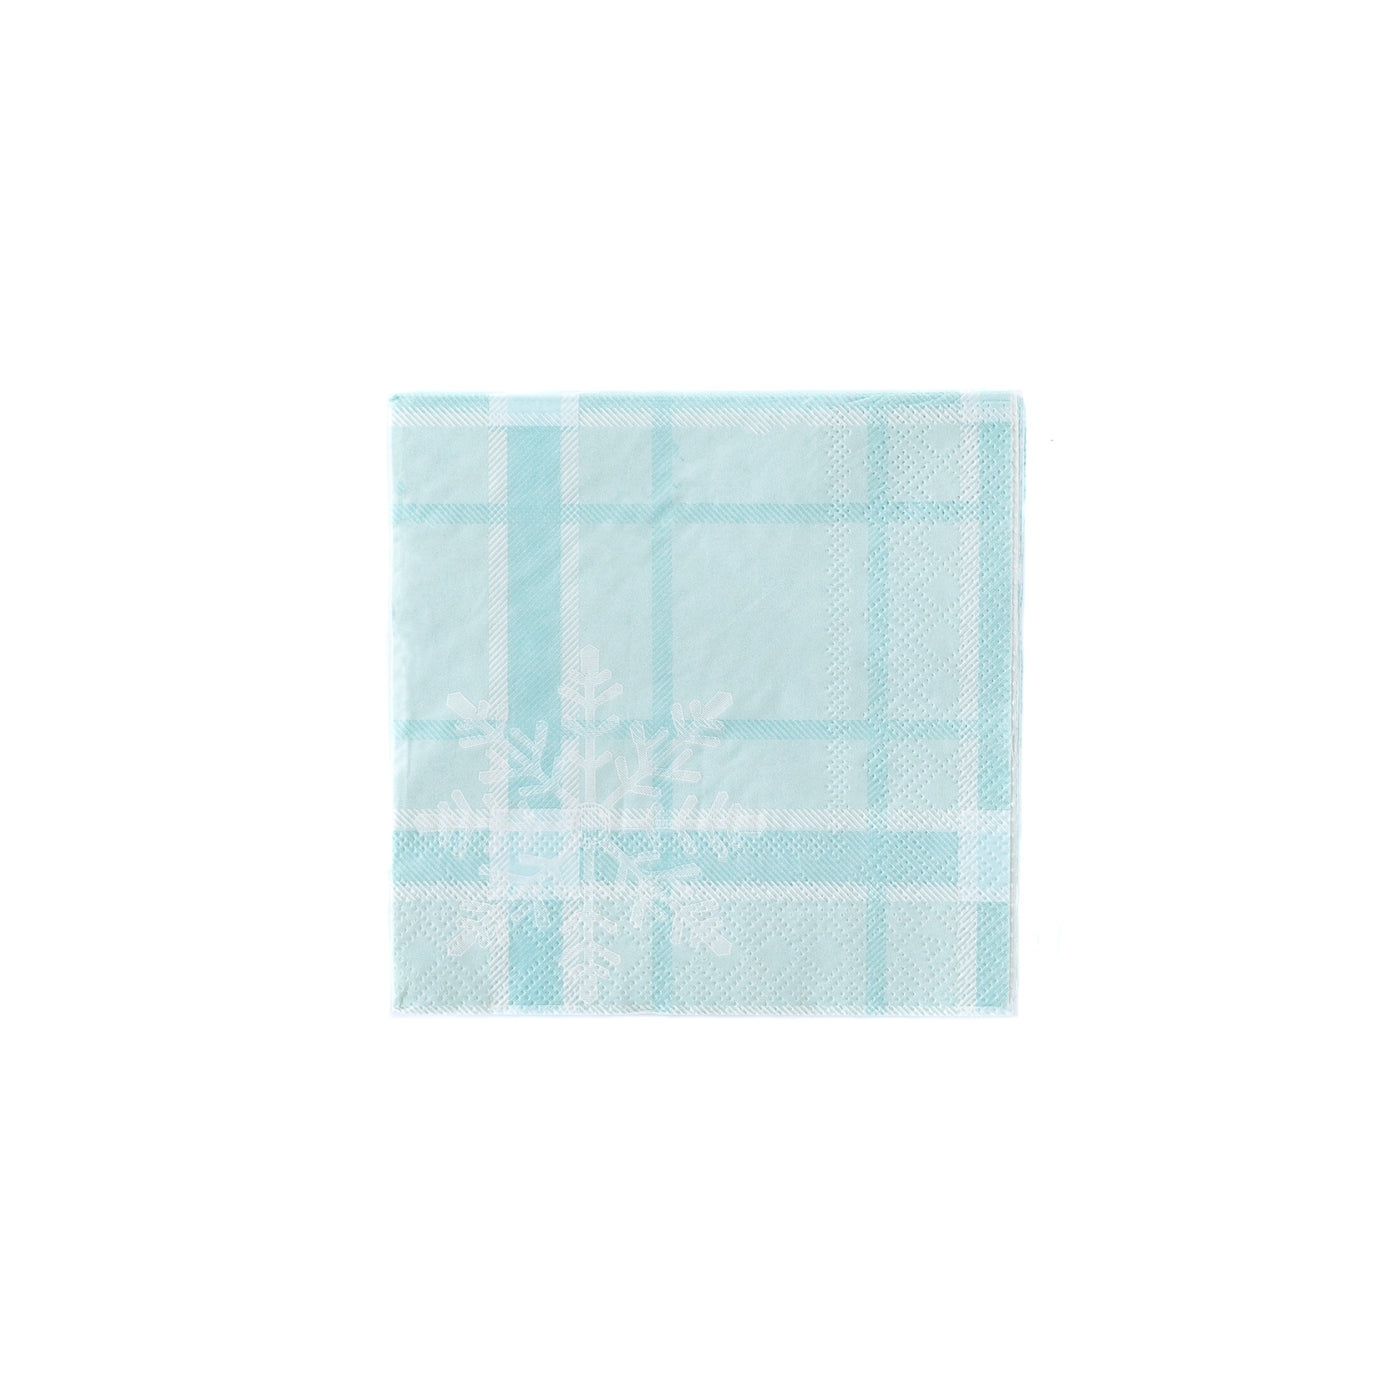 PLTS235D - Blue Snowflake Cocktail Napkin